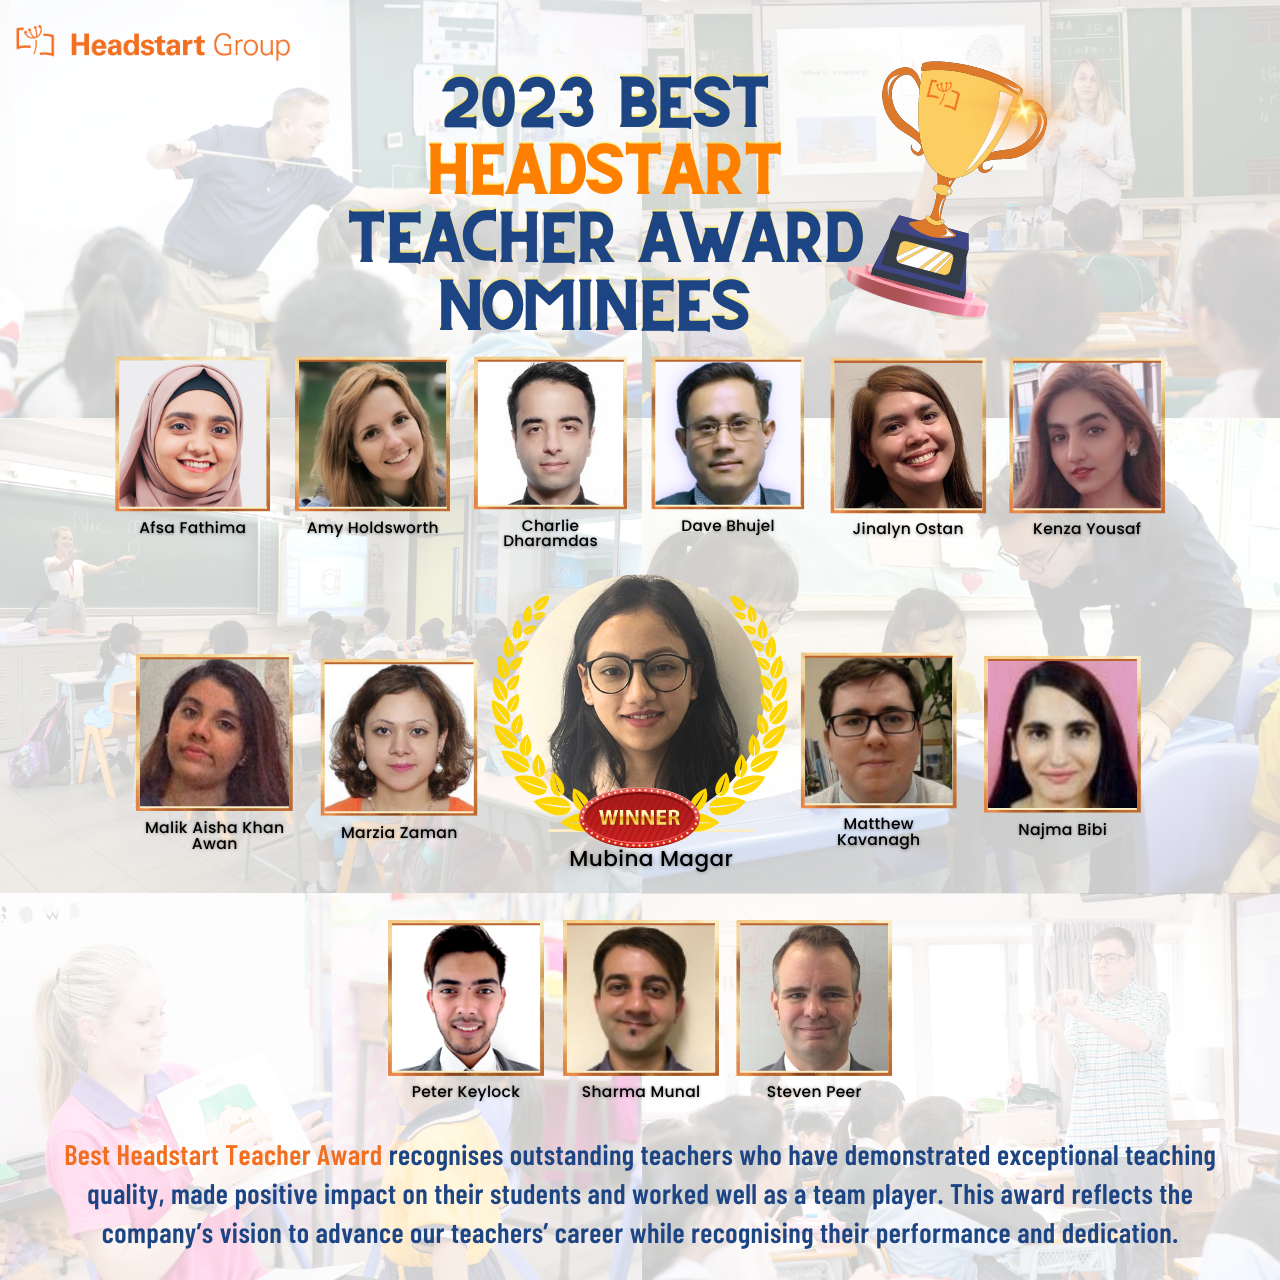 2023 Best Headstart Teacher Award